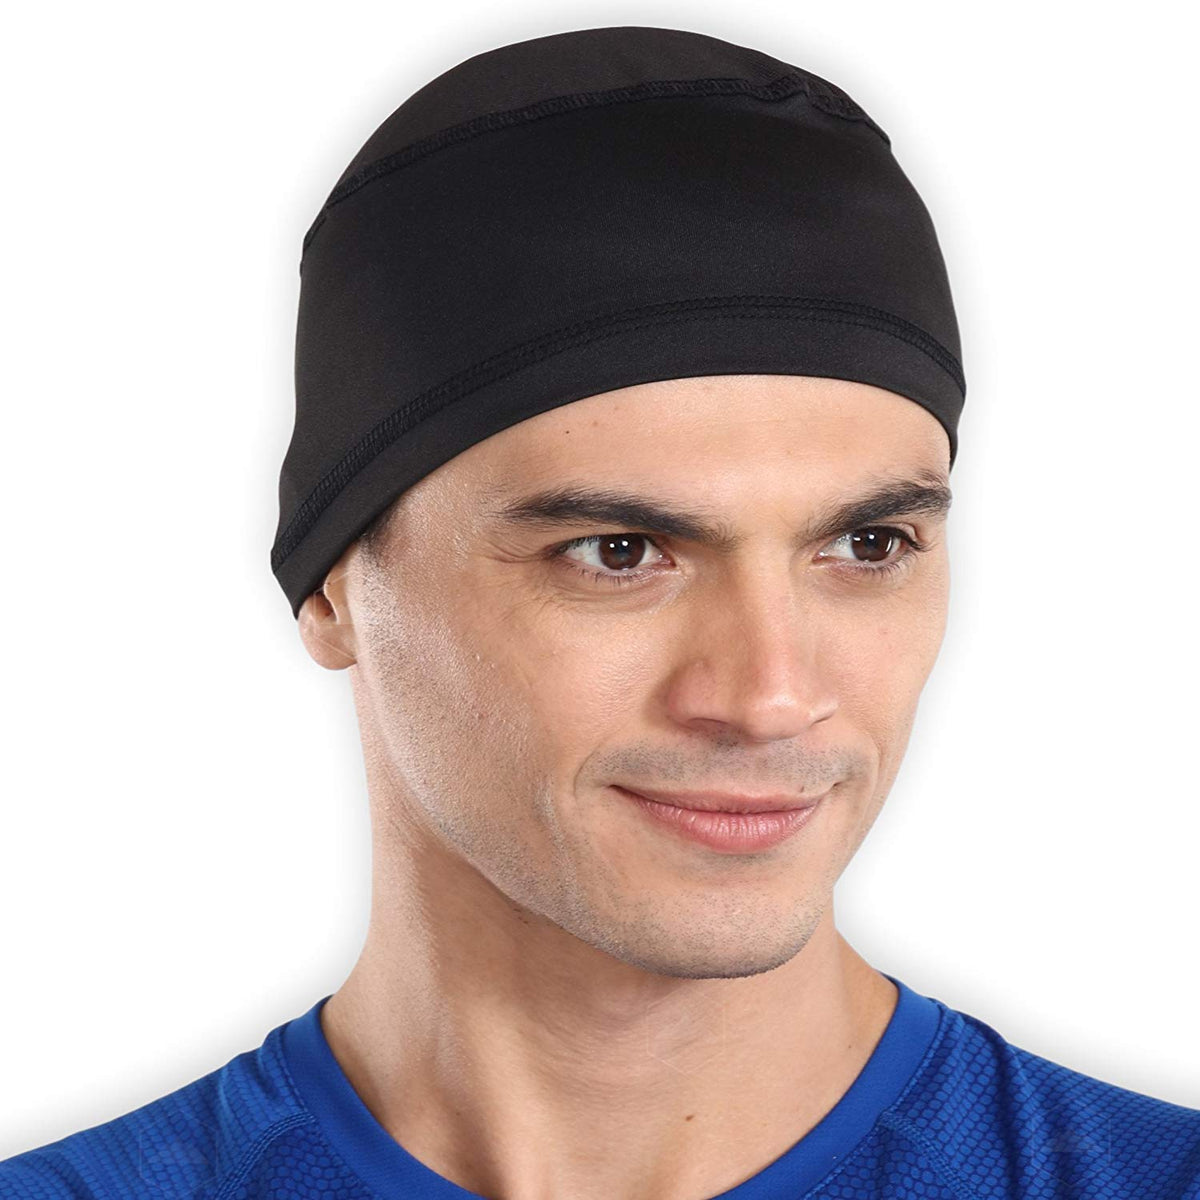  Tough Headwear Cooling Skull Cap Helmet Liner for Men